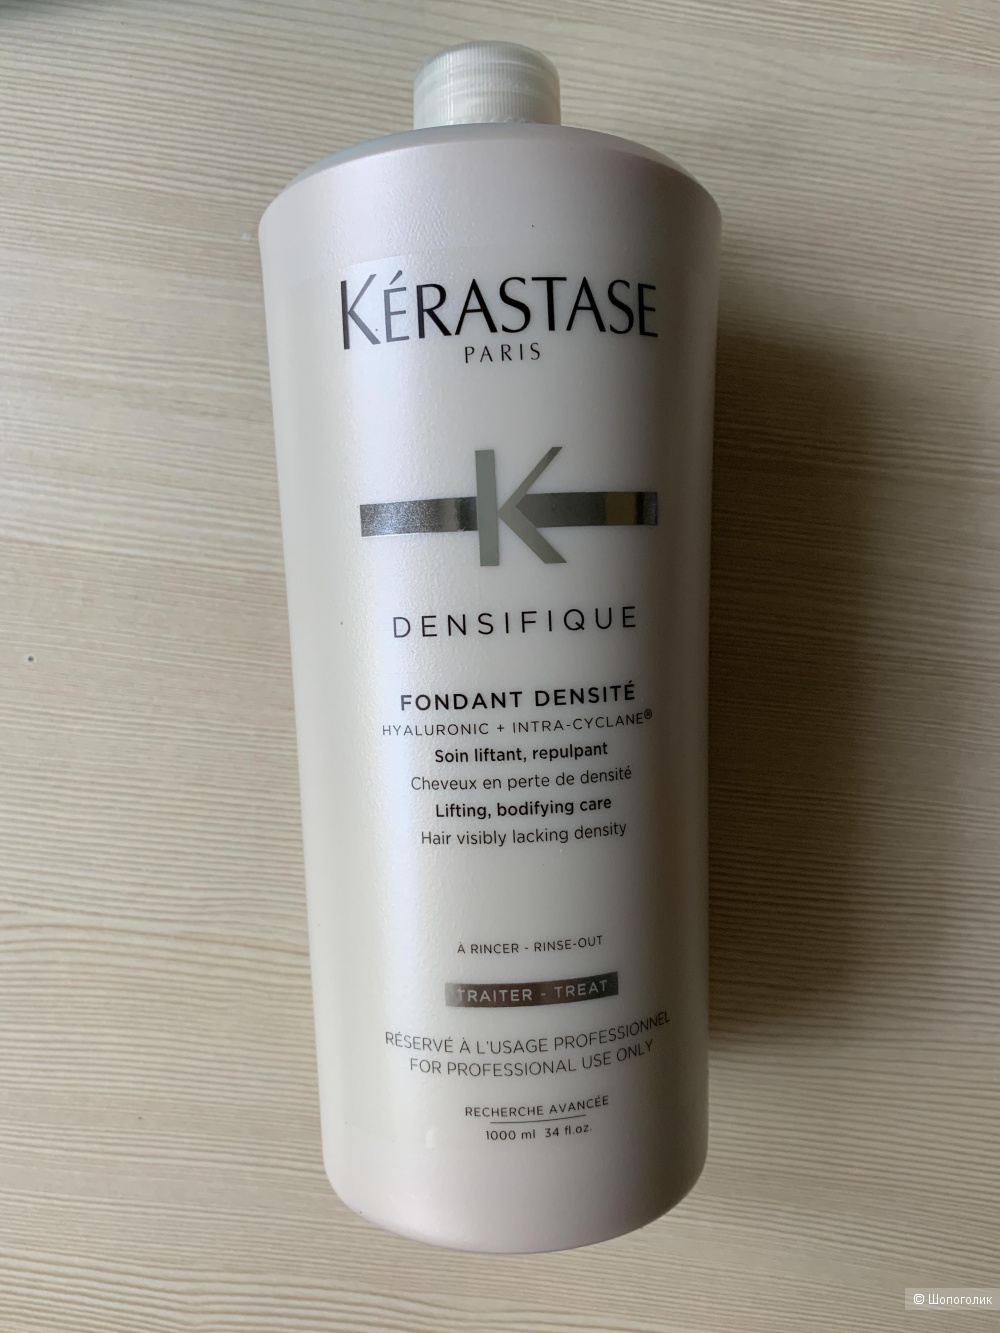 Kerastase Densifique молочко для плотности волос, 1000 мл